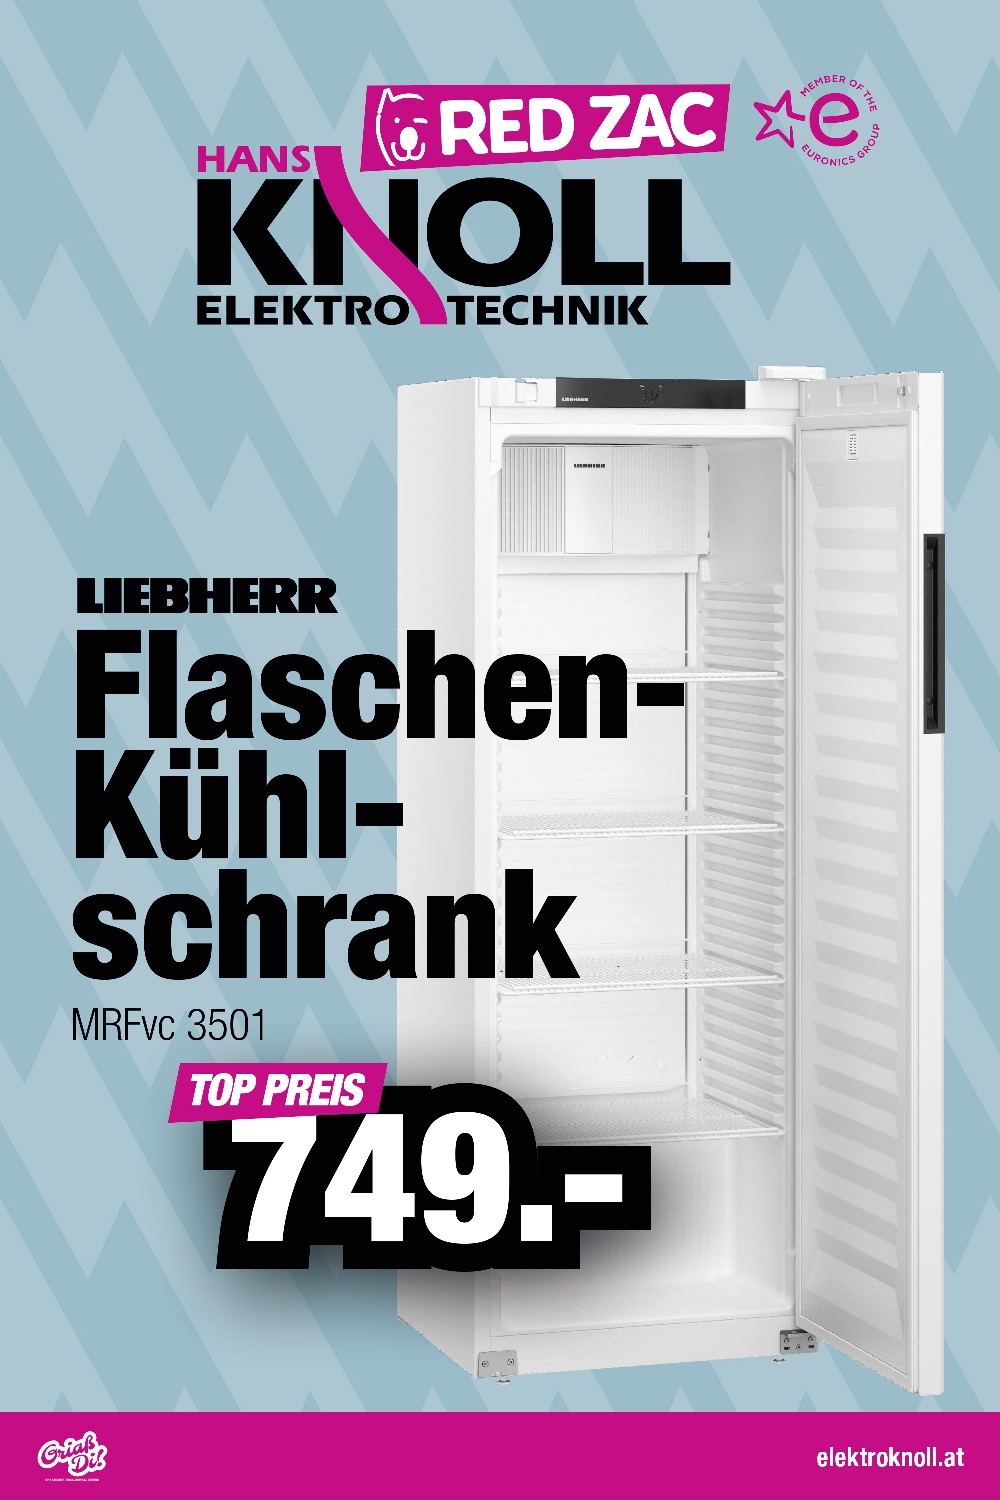 Liebherr Flaschenkühlschrank KW25 und 26 ab 16.06.23